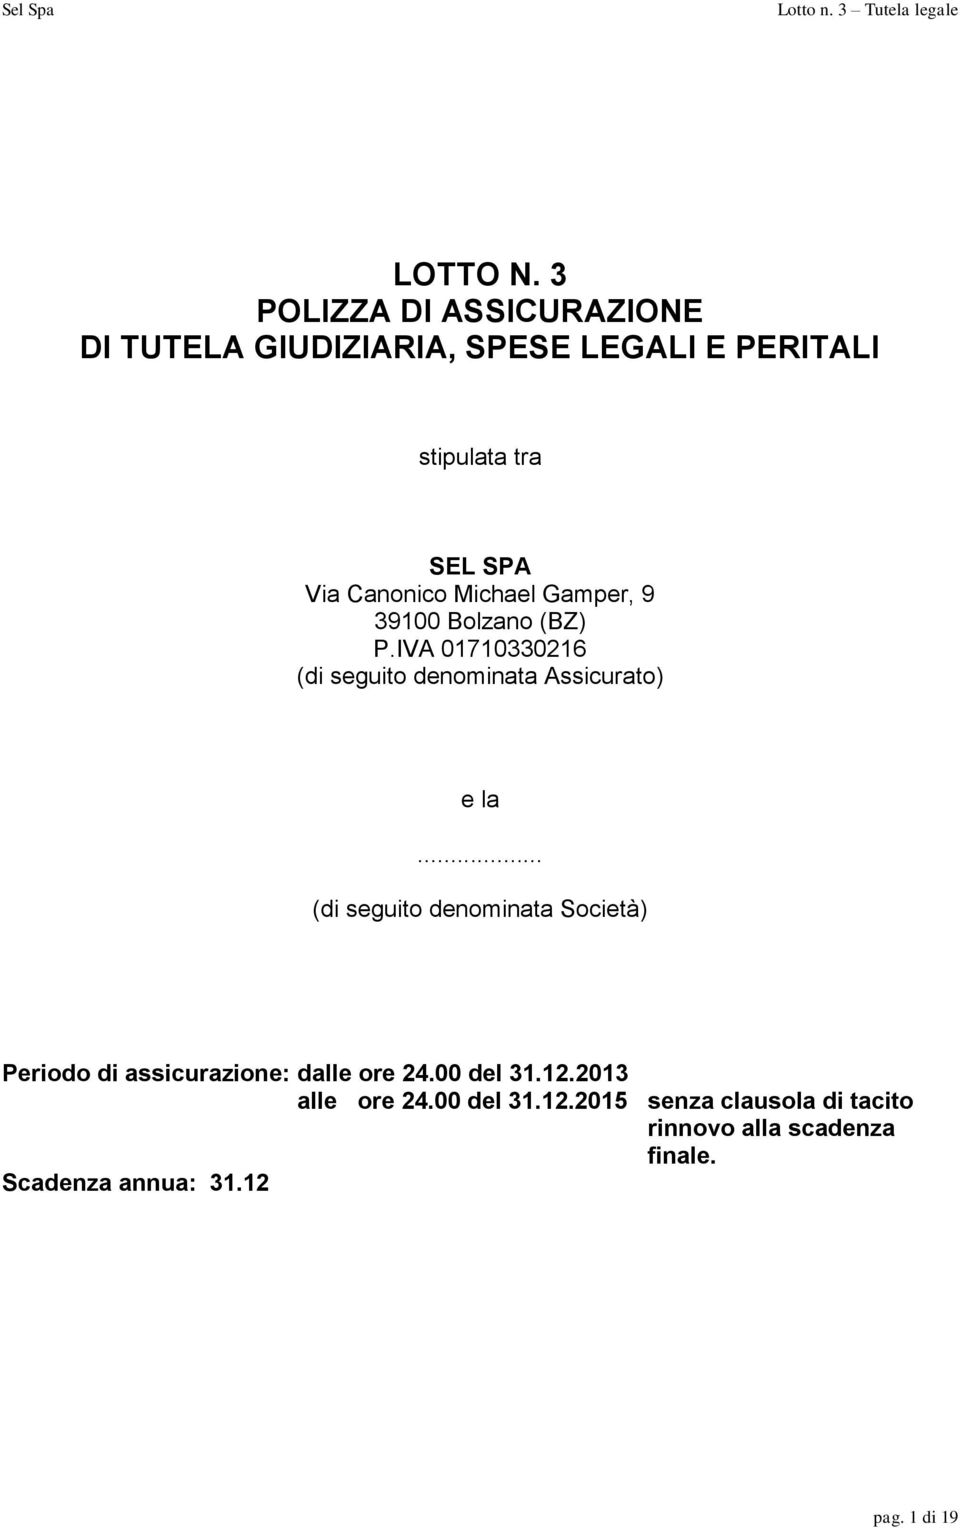 Canonico Michael Gamper, 9 39100 Bolzano (BZ) P.IVA 01710330216 (di seguito denominata Assicurato) e la.